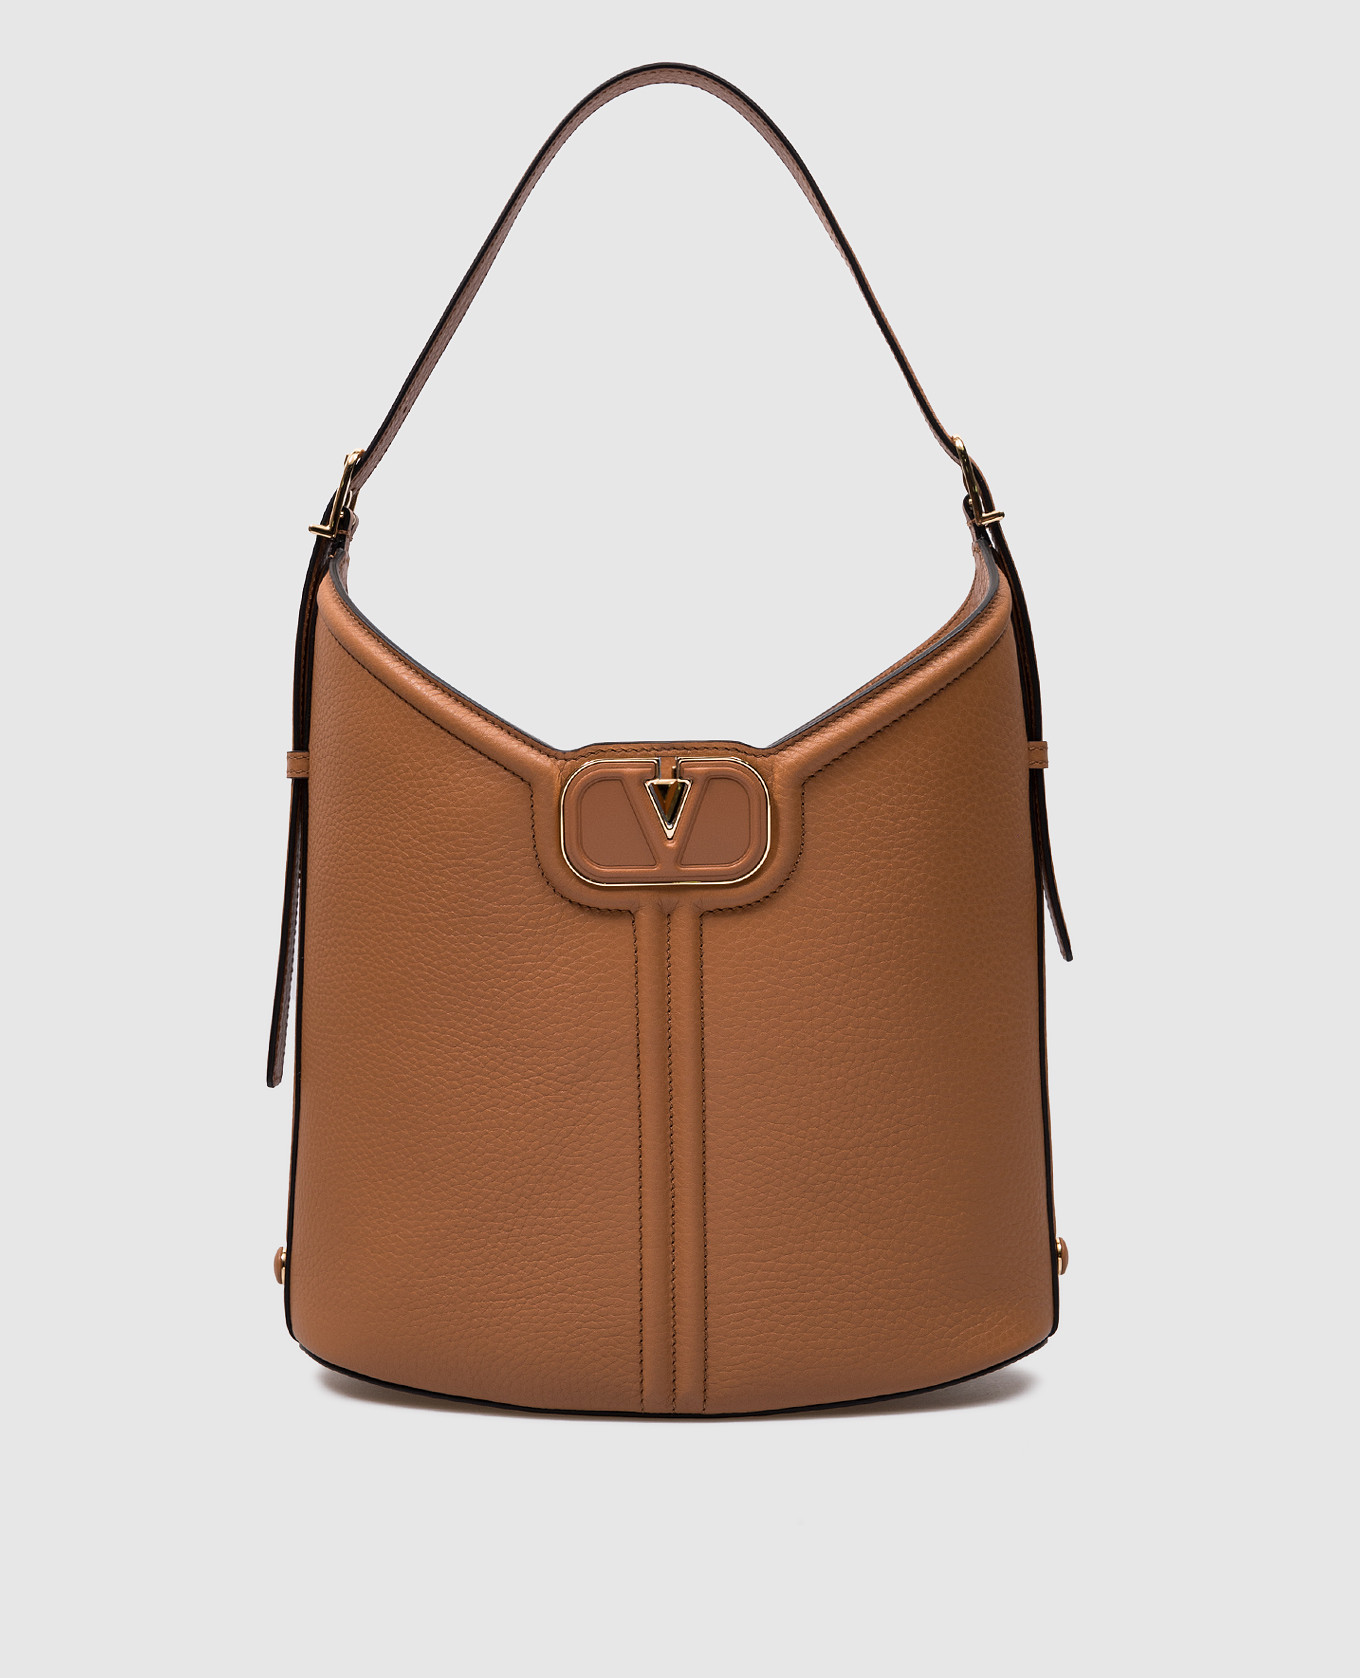 VLOGO brown leather hobo bag